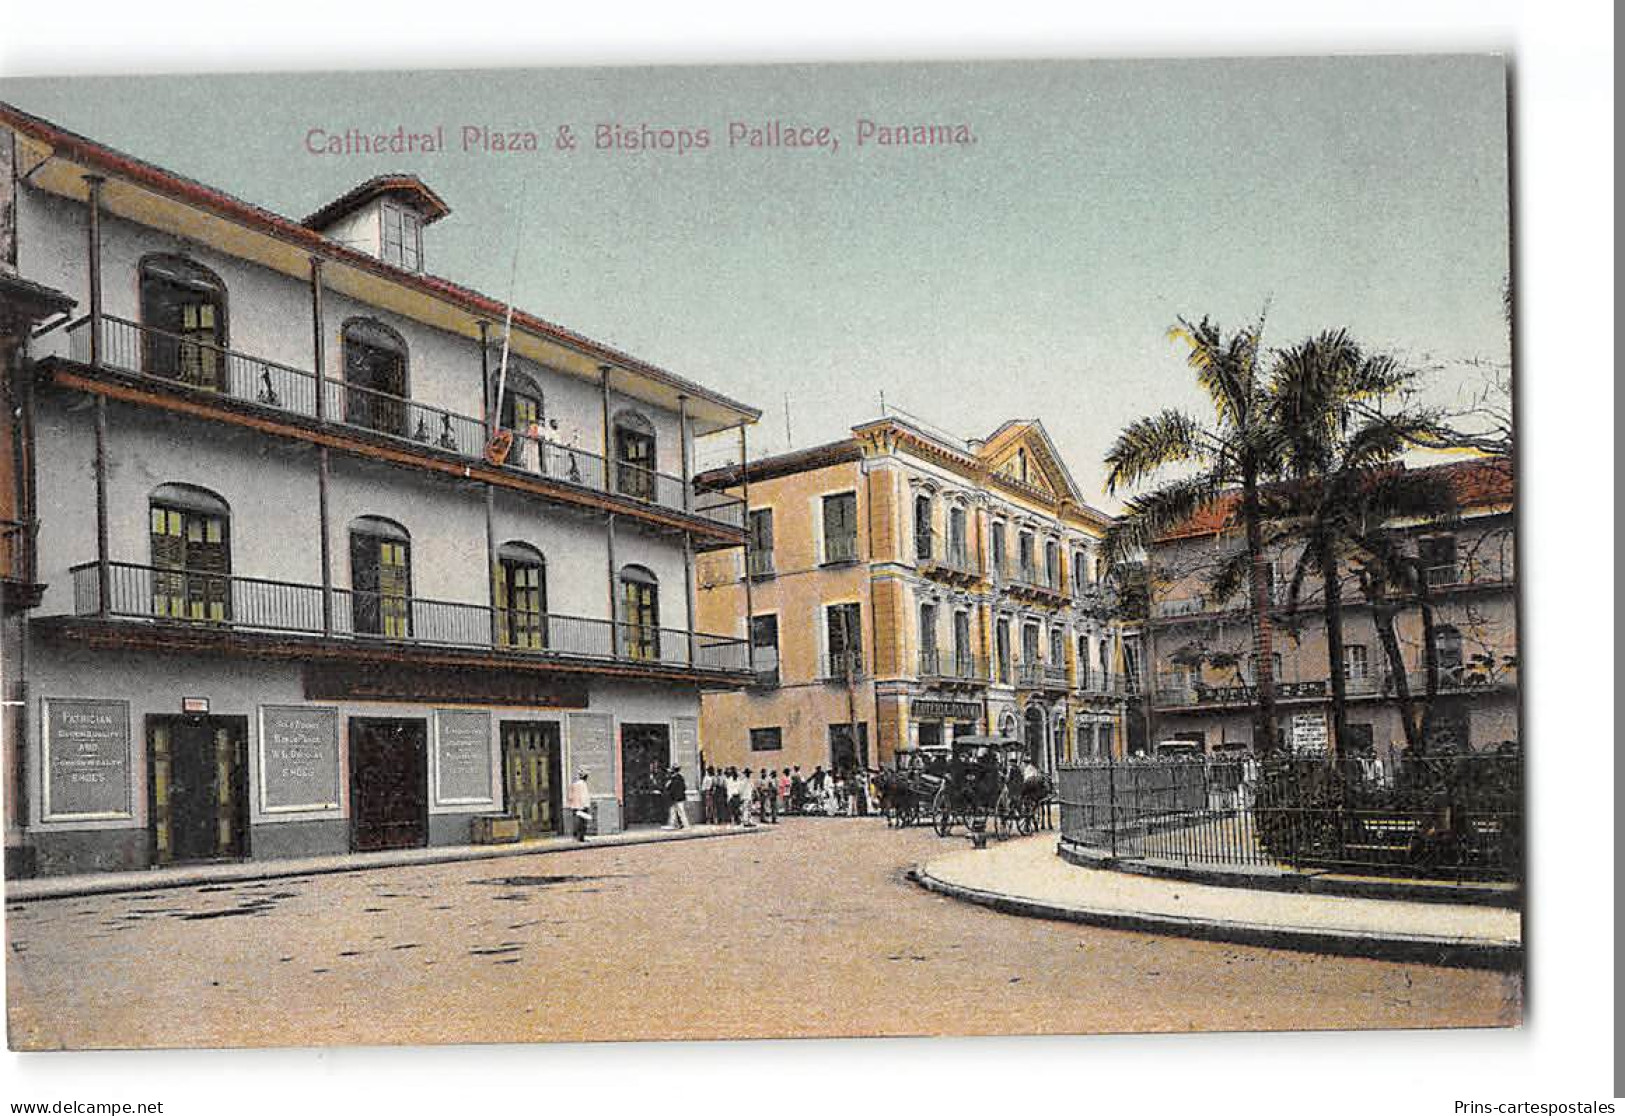 CPA Panama Cathedral Plaza & Bishops Pallace - Panamá